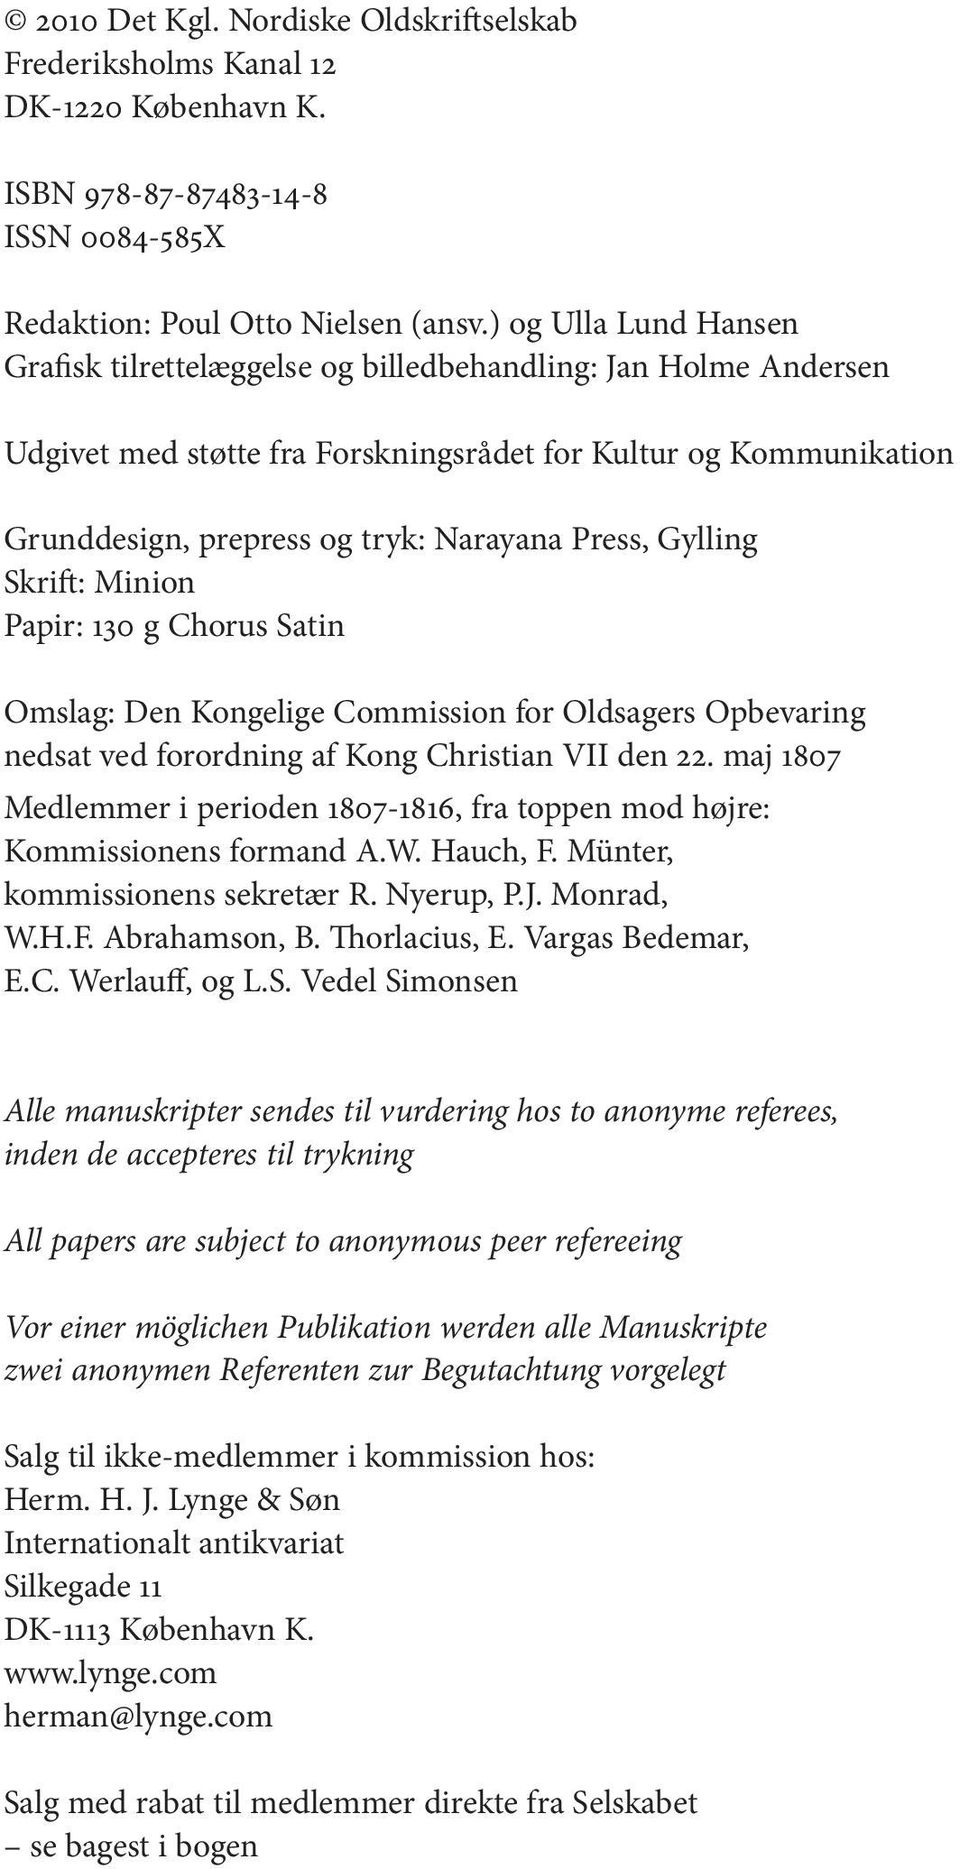 Press, Gylling Skrift: Minion Papir: 130 g Chorus Satin Omslag: Den Kongelige Commission for Oldsagers Opbevaring nedsat ved forordning af Kong Christian VII den 22.